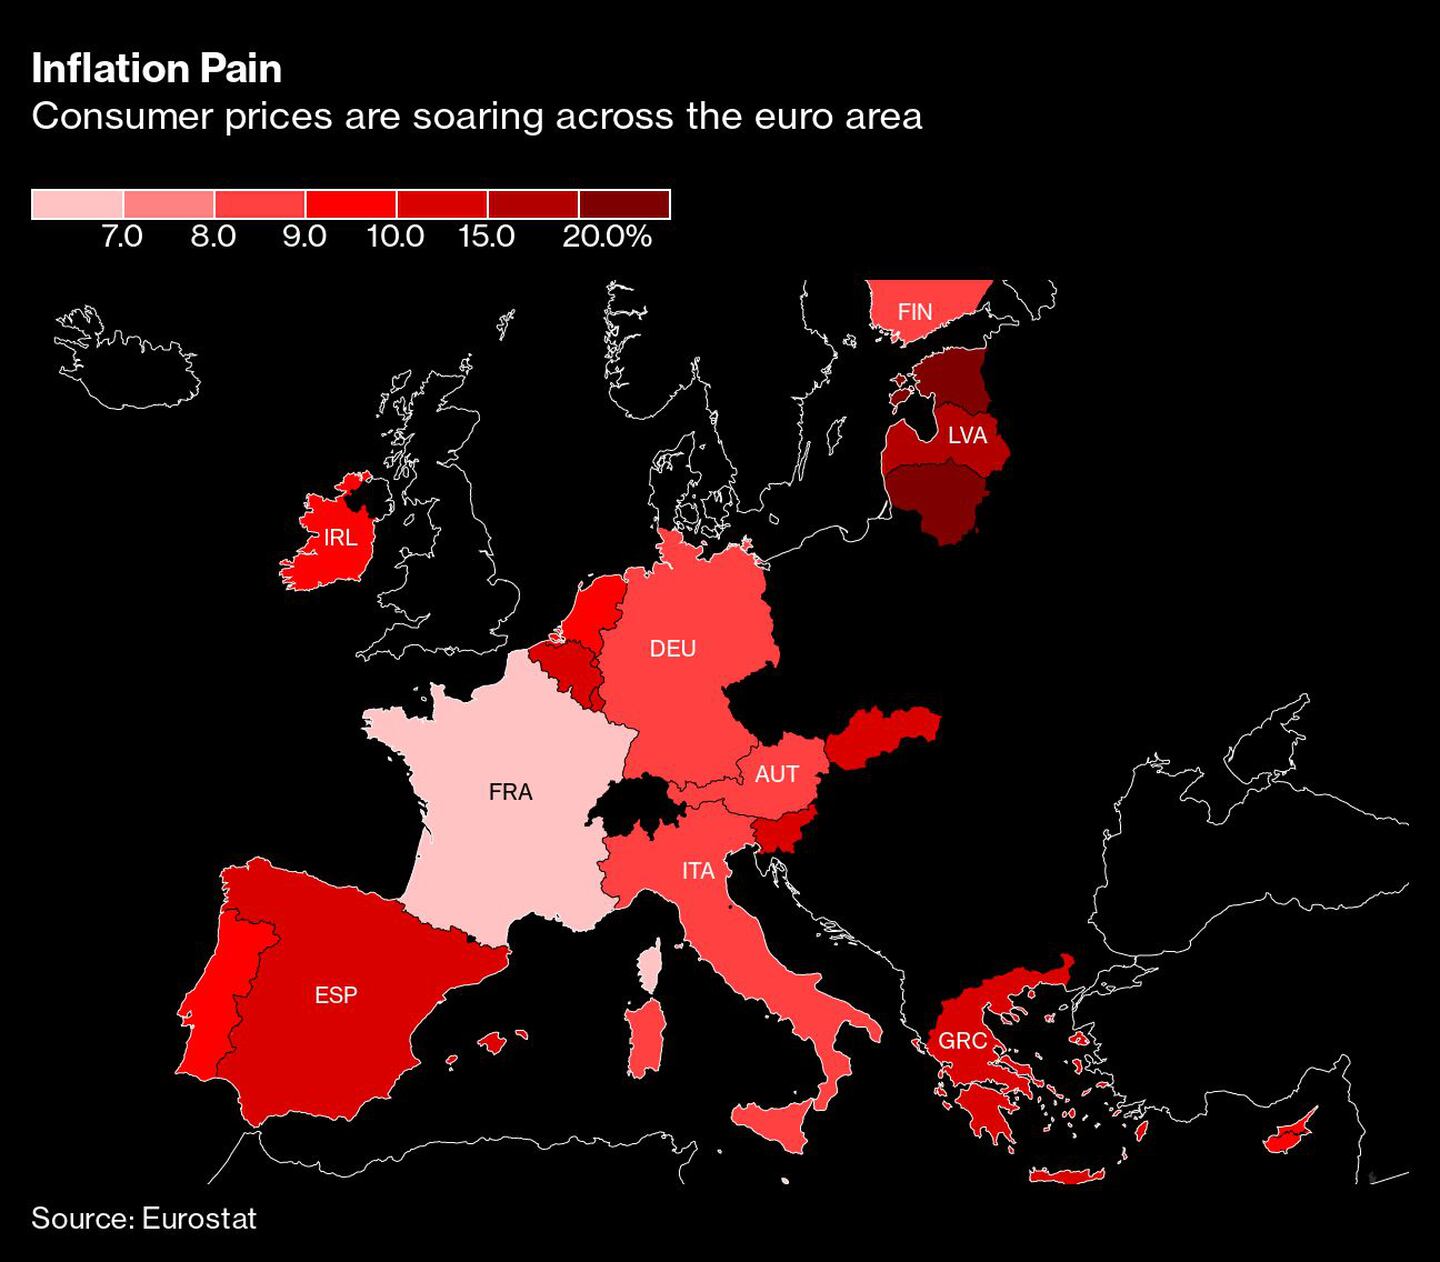 El dolor de la inflación
Los precios al consumo se disparan en toda la zona eurodfd